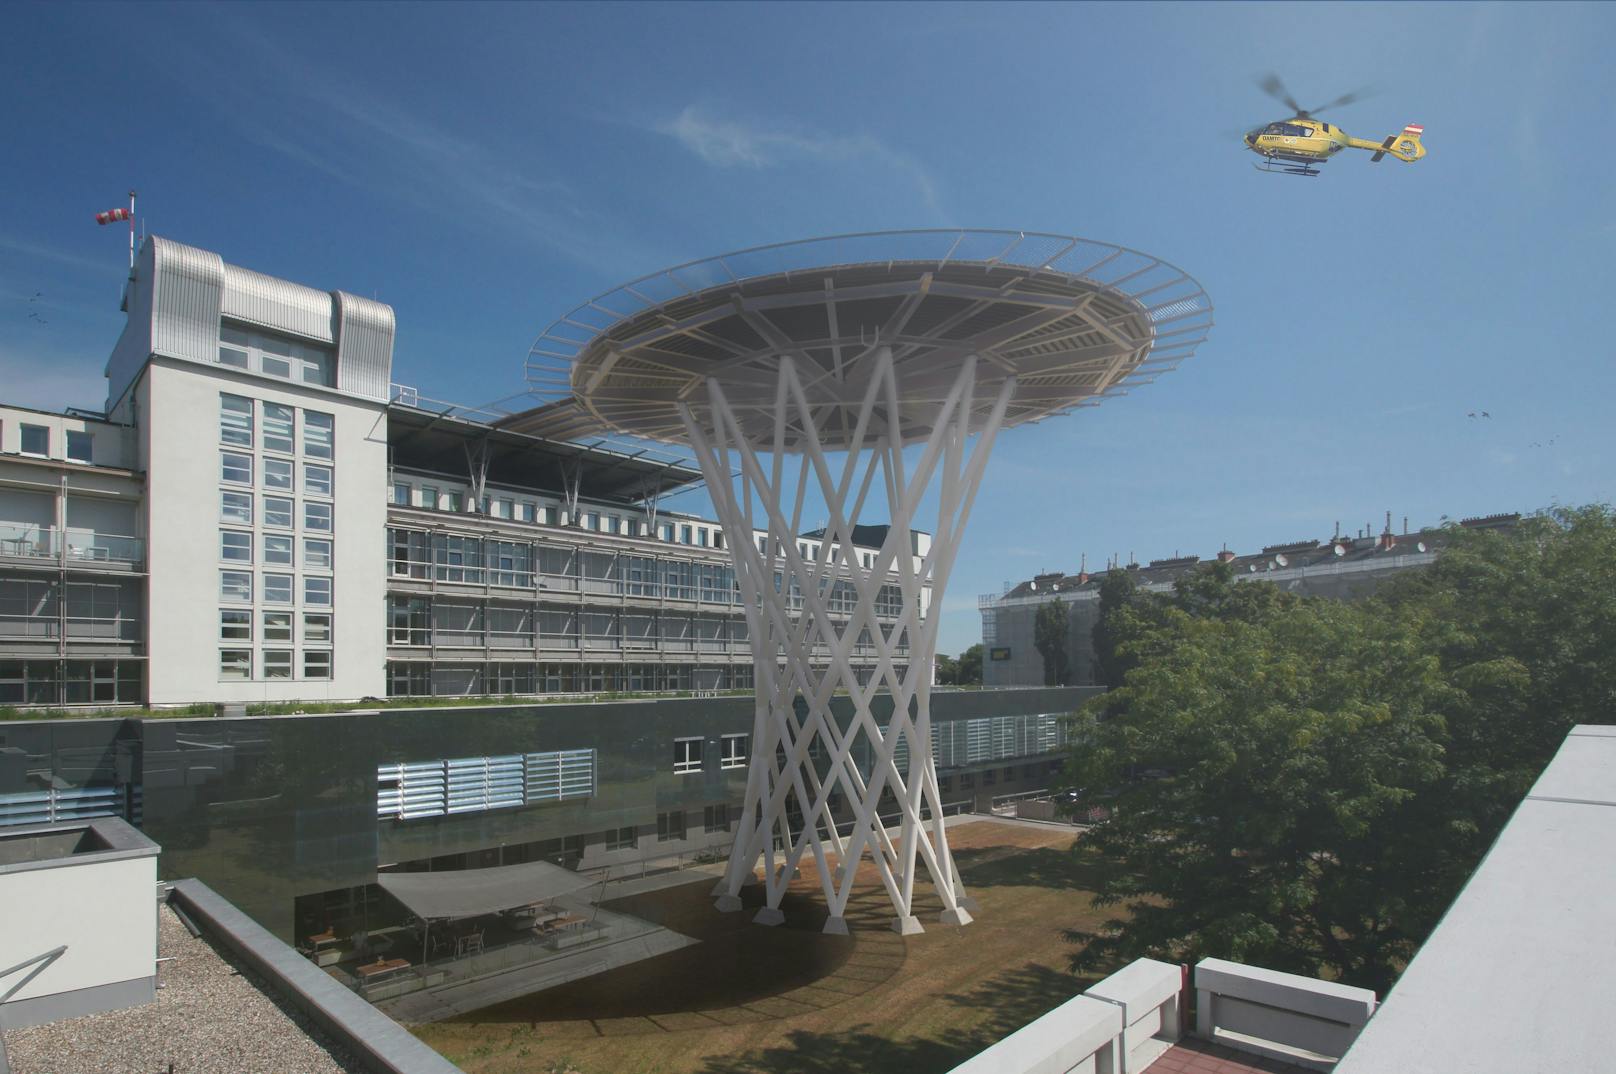 Visualisierung der neuen Hubschrauberlandeplattform im Traumazentrum Wien am Standort Meidling